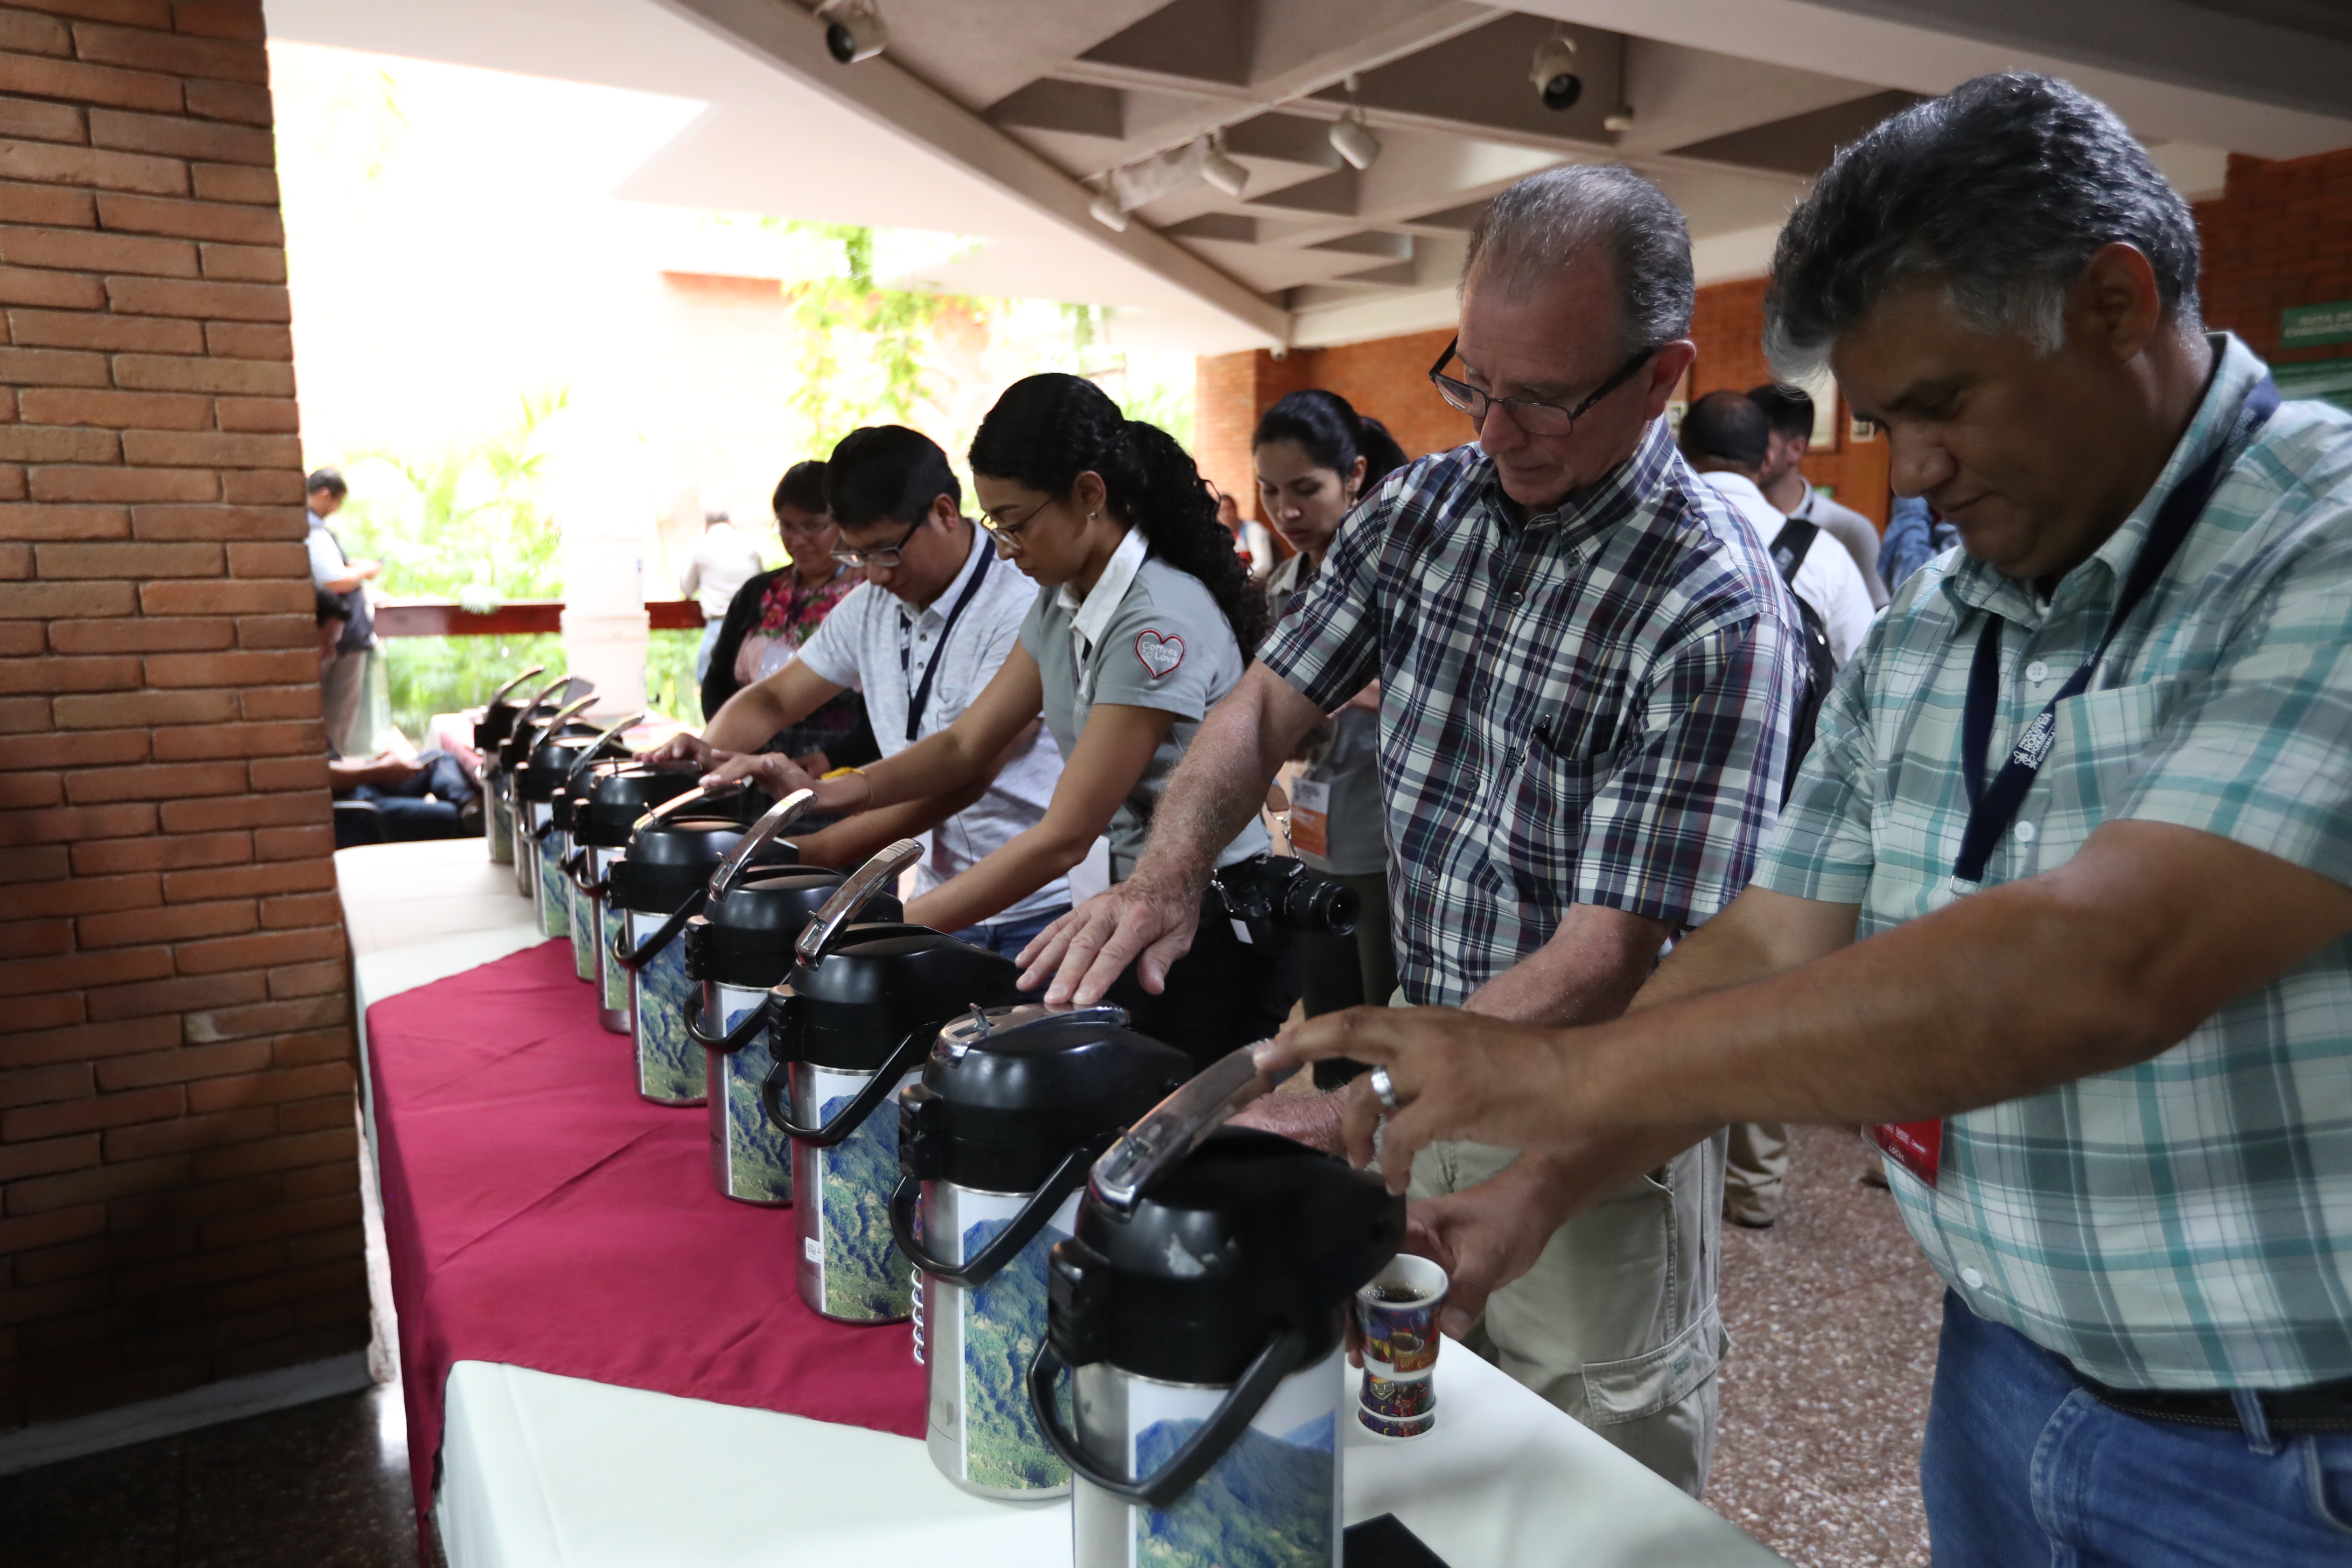 Los productores y tostadores de café aplicaron estrategias de comercialización directa en medio de la pandemia y el volumen se mantuvo. (Foto Prensa Libre: Hemeroteca) 